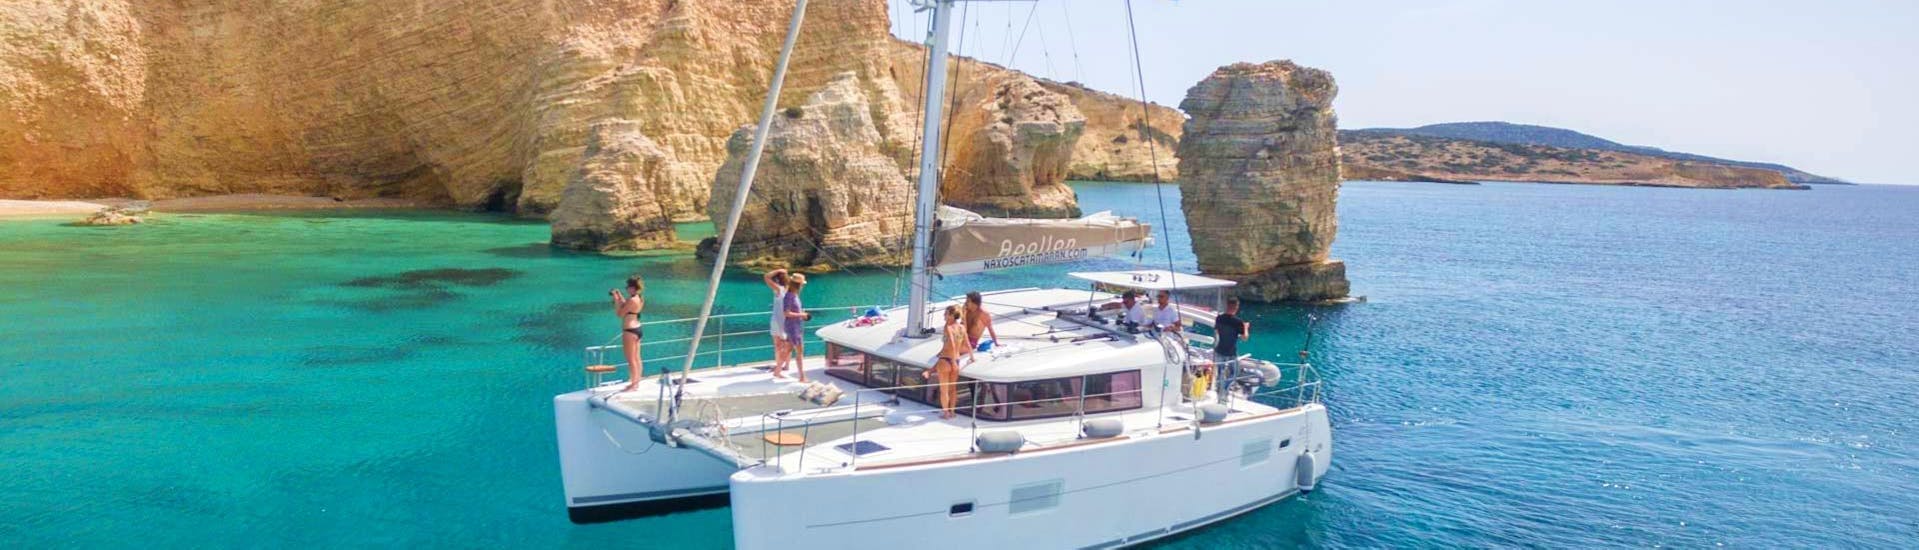 Während der ganztägigen Segeltour auf einem Luxuskatamaran von Naxos segelt der Katamaran Apollon von Naxos Catamaran entlang der wunderschönen Küste von Paros.